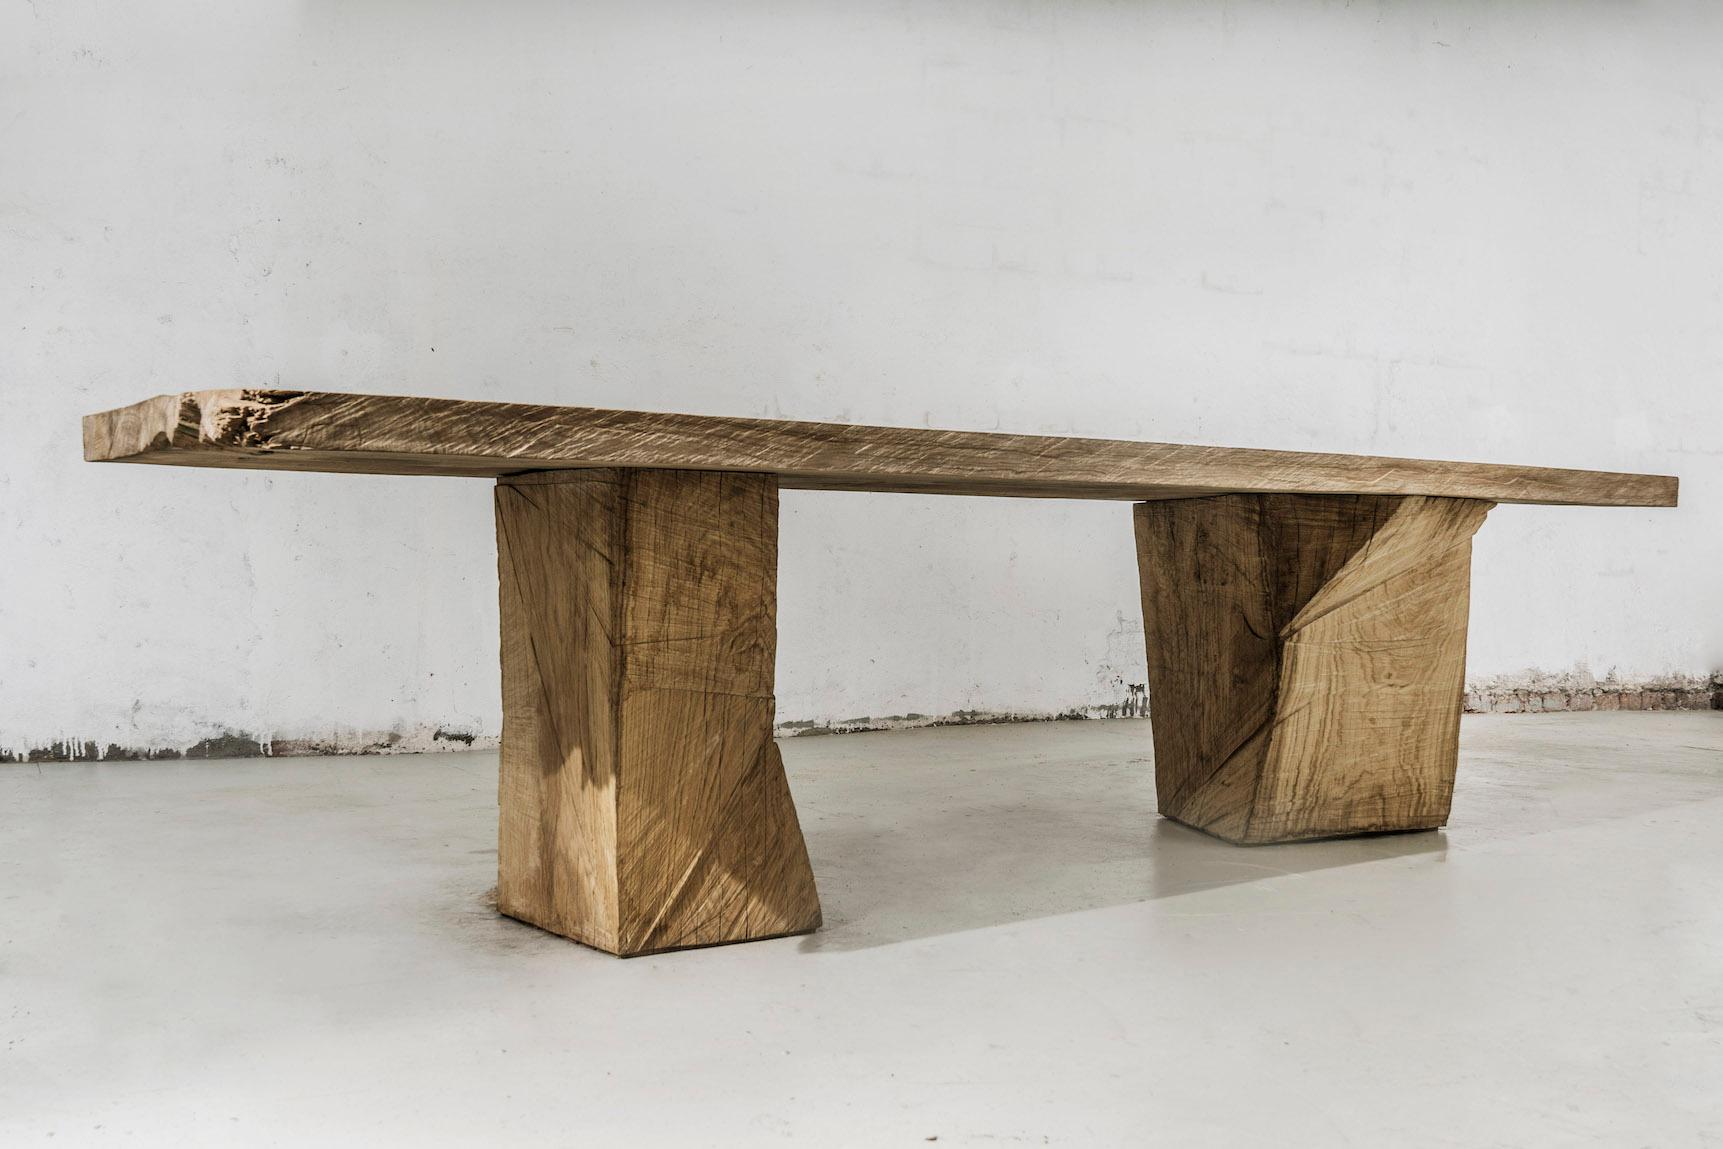 Table à manger massive en chêne massif (+ huile de lin)
(Utilisation en extérieur possible)


Les meubles chaleureux sont réalisés par le designer russe Denis Milovanov du studio 